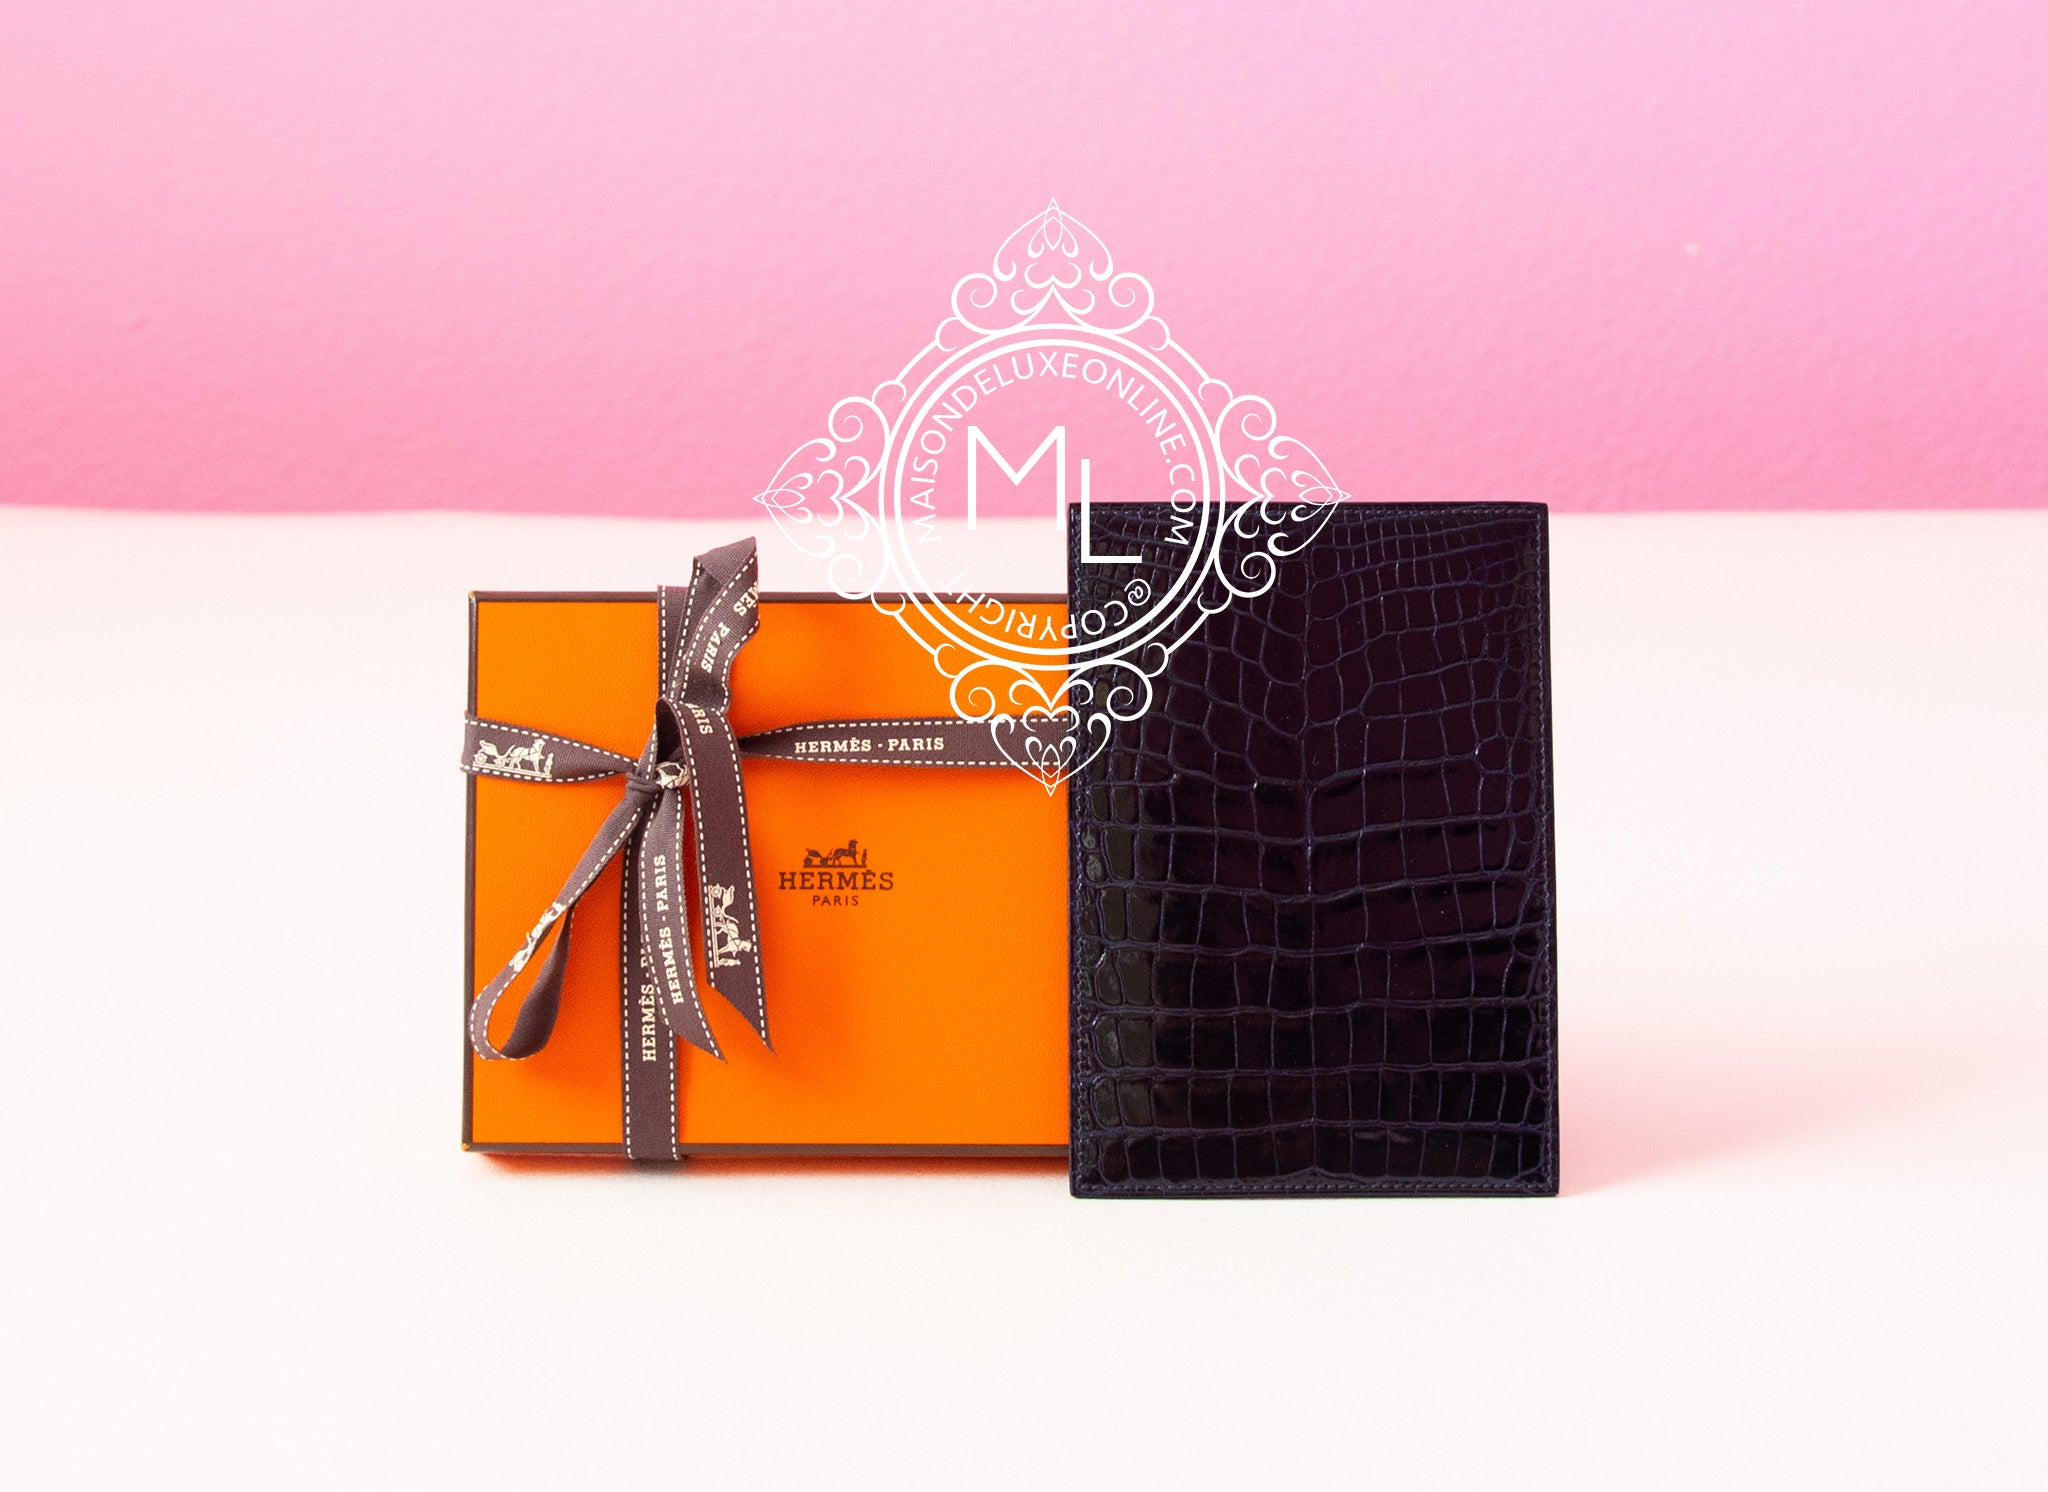 Hermès MC² Euclide Cardholder - Black Wallets, Accessories